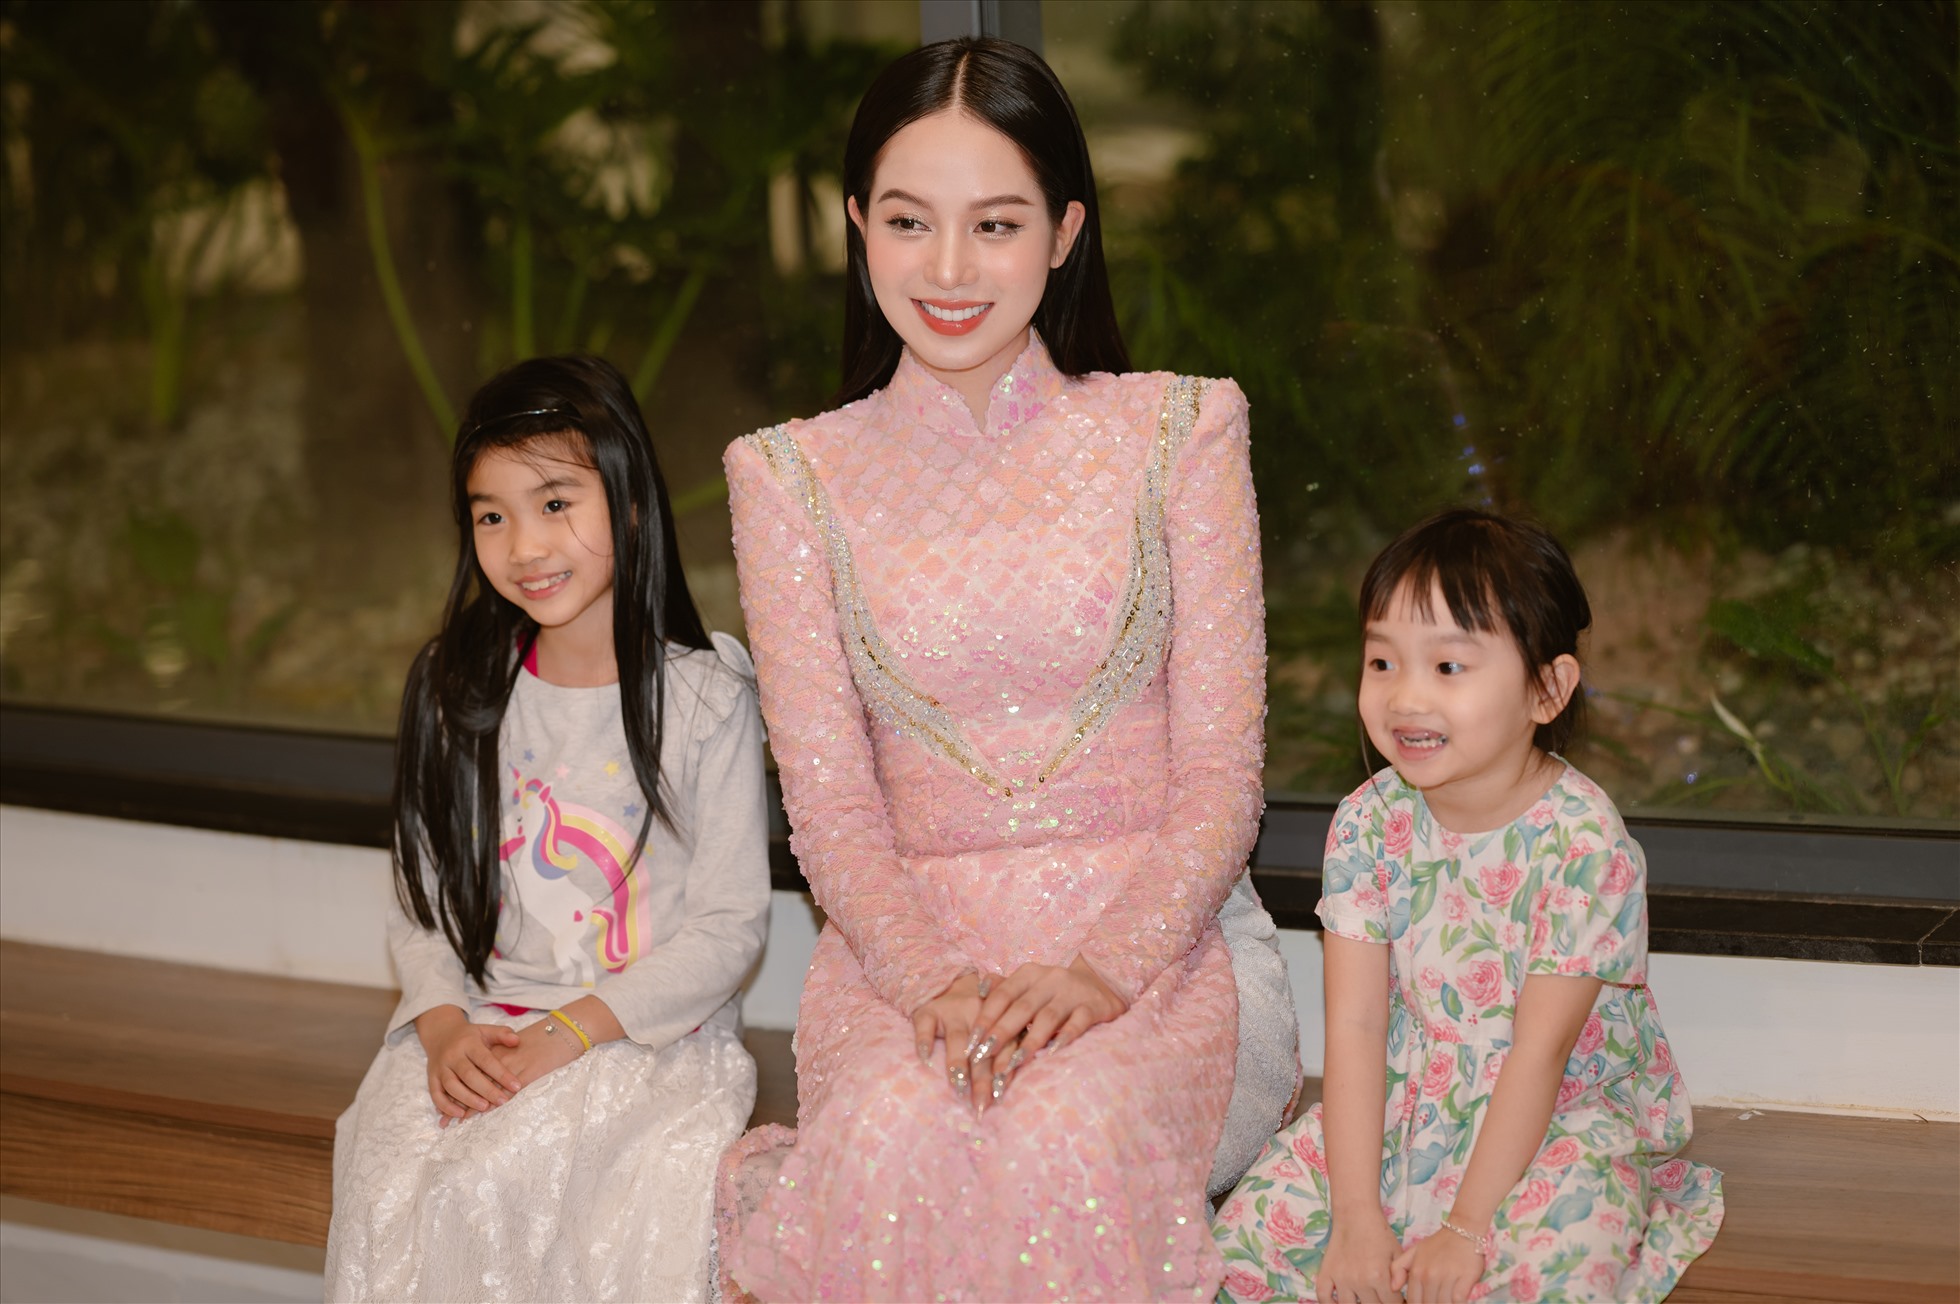 Sự xuất hiện của Thanh Thủy trong phần 2 của chương trình với chủ đề “Áo dài - Bản sắc văn hóa Việt” đã thể hiện một màn kết ấn tượng trong màn trình diễn áo dài tại lễ trao giải thưởng Chi hội Phụ nữ tiêu biểu năm 2022.